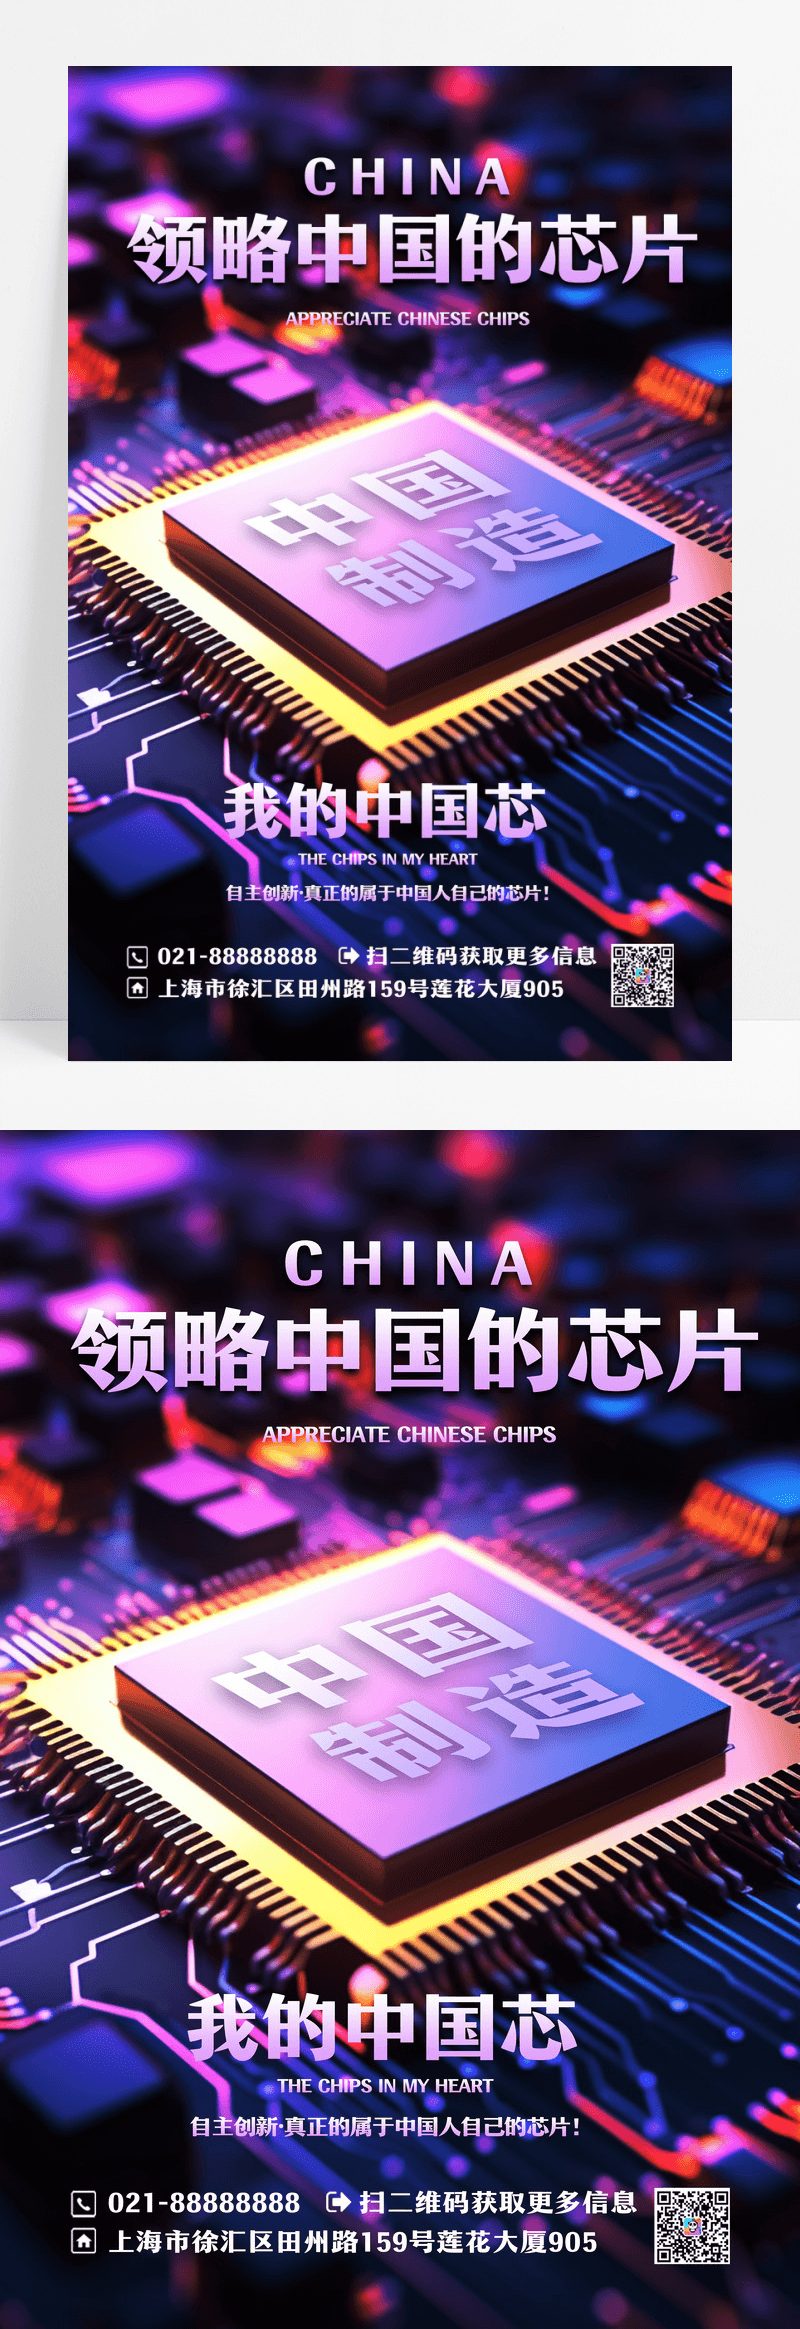 炫酷简约中国芯片宣传海报设计